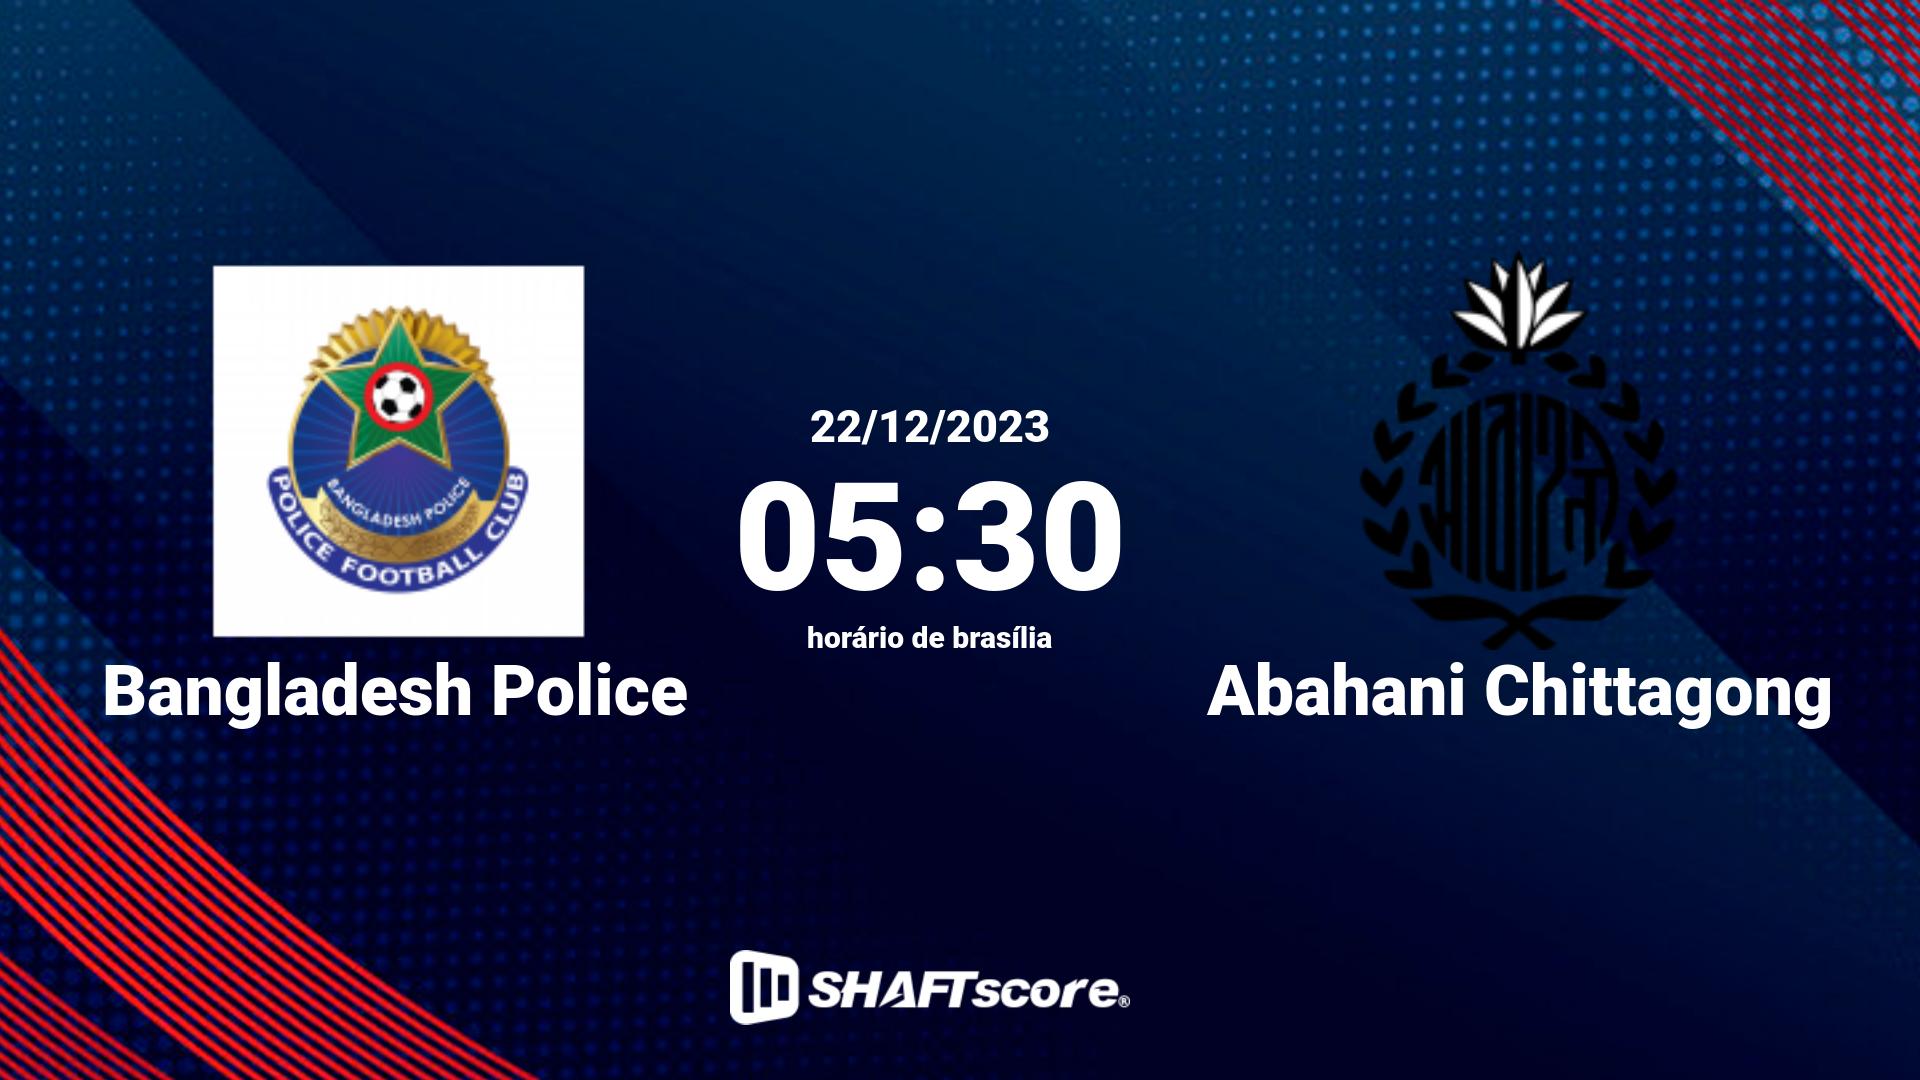 Estatísticas do jogo Bangladesh Police vs Abahani Chittagong 22.12 05:30